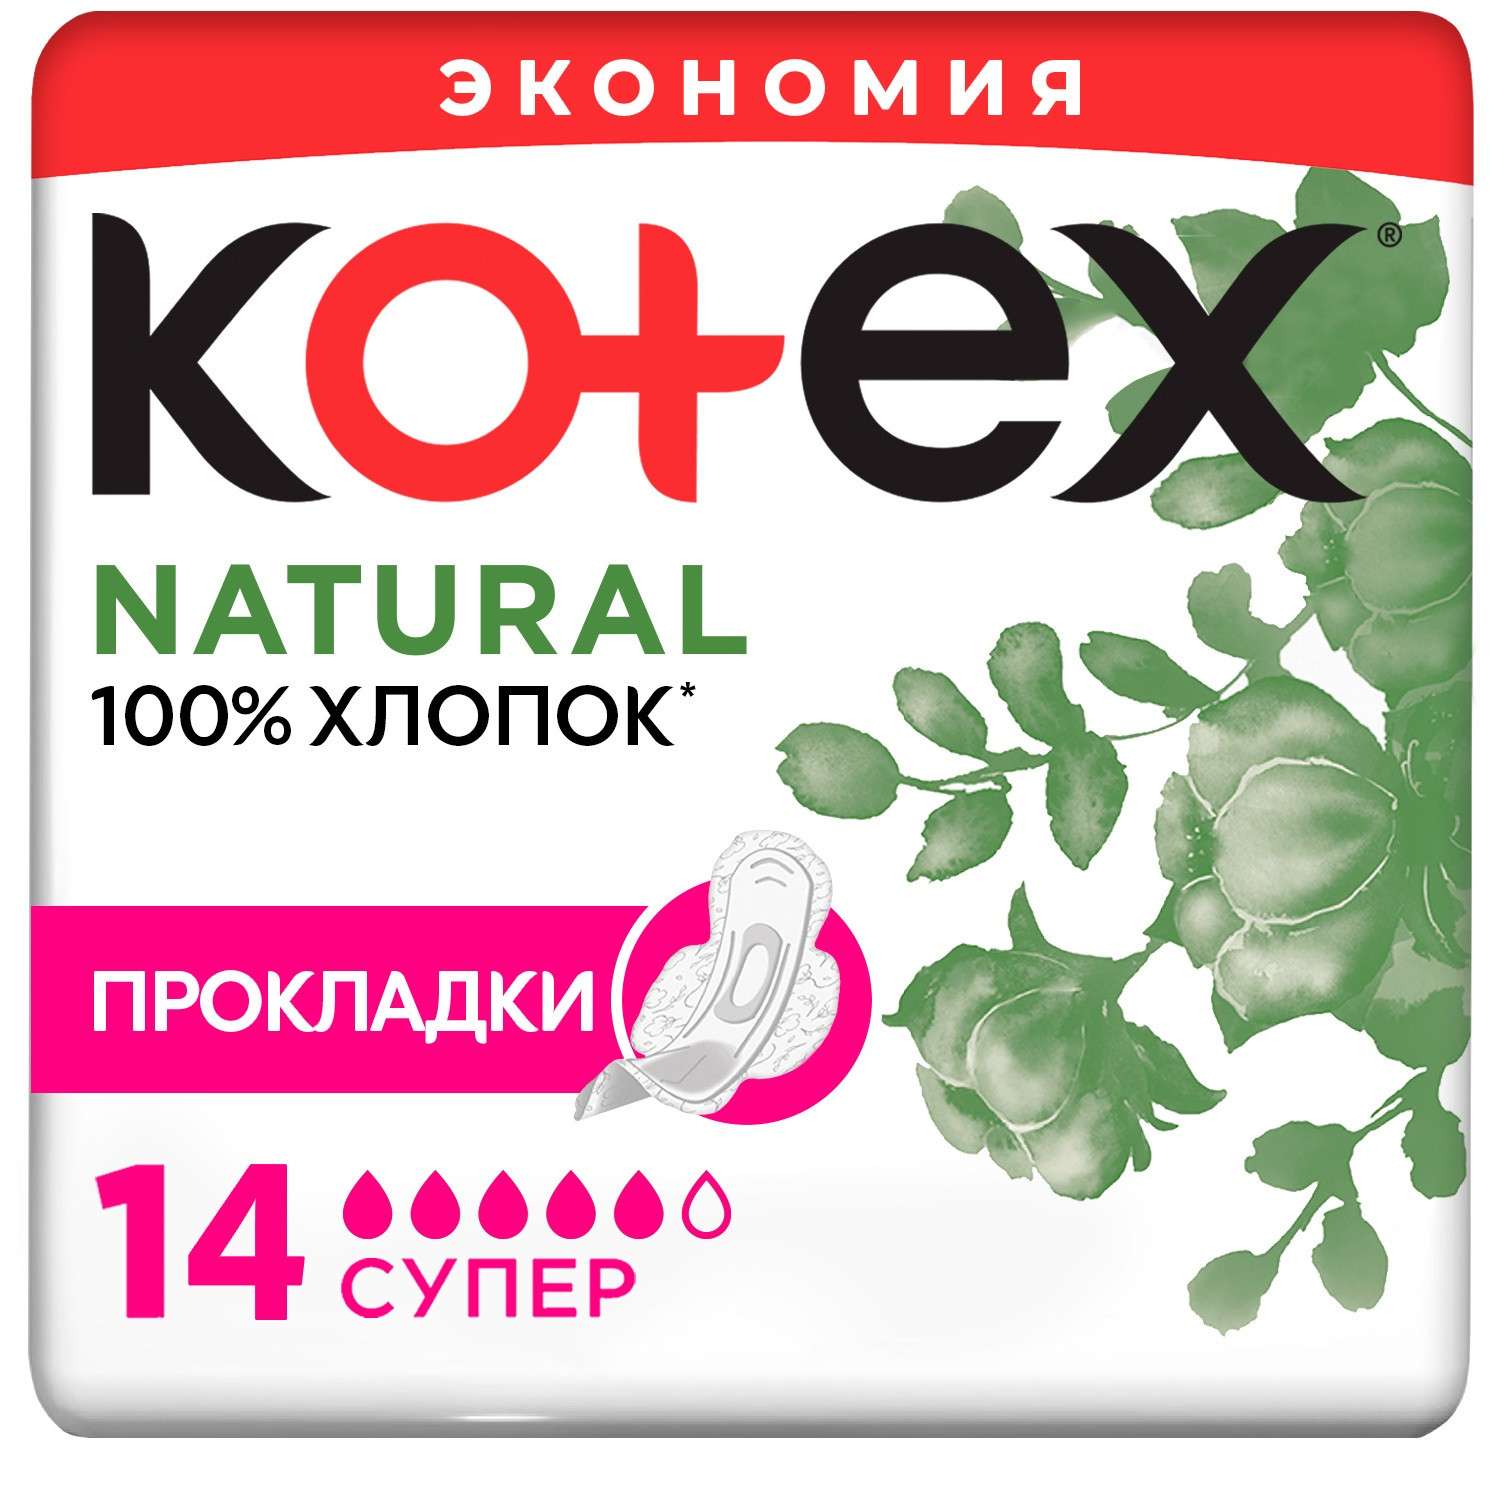 Прокладки KOTEX Natural Super 14шт - фото 2